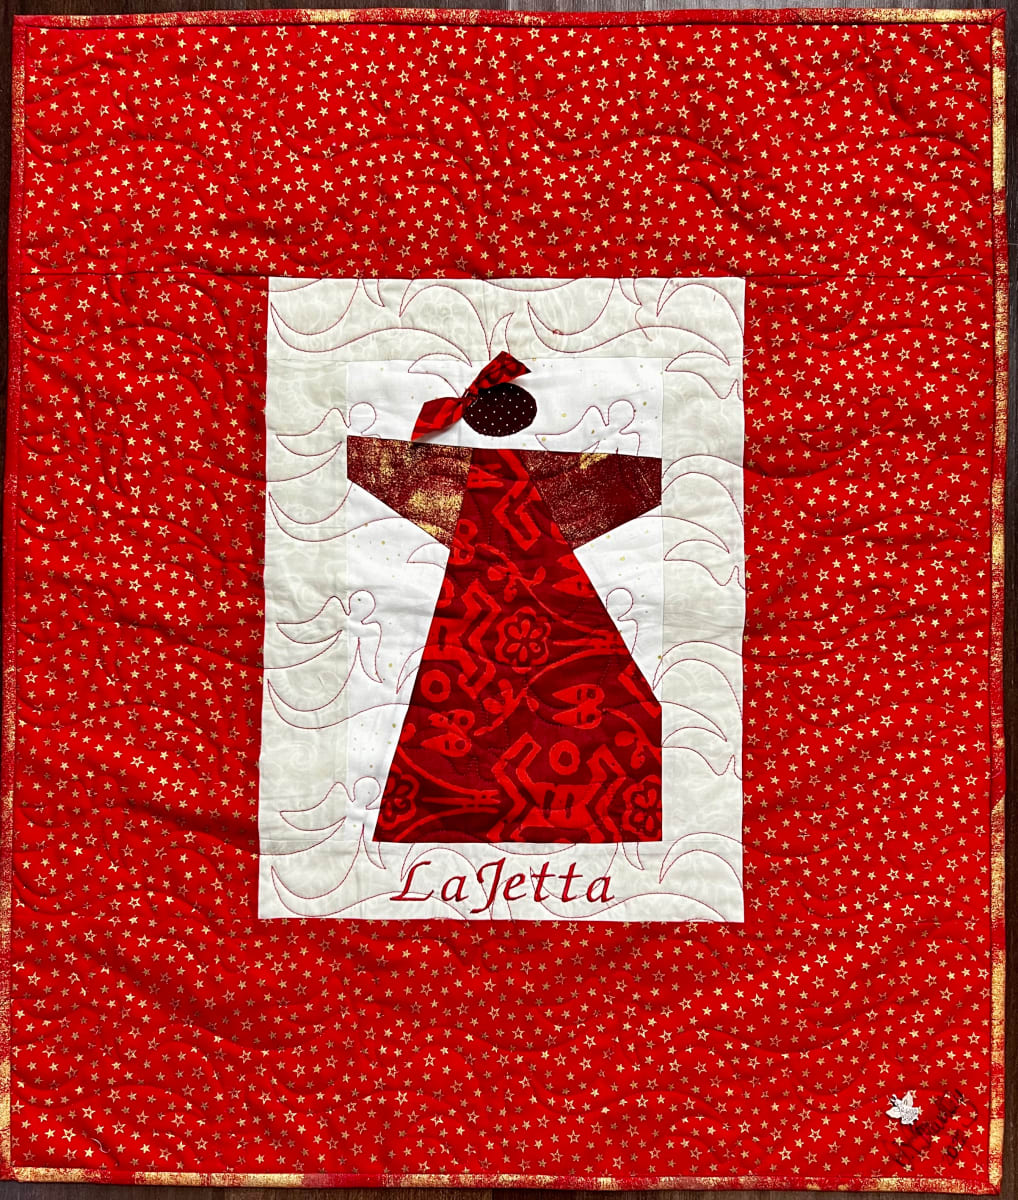 LaJetta Angel by O.V. Brantley  Image: LaJetta Angel